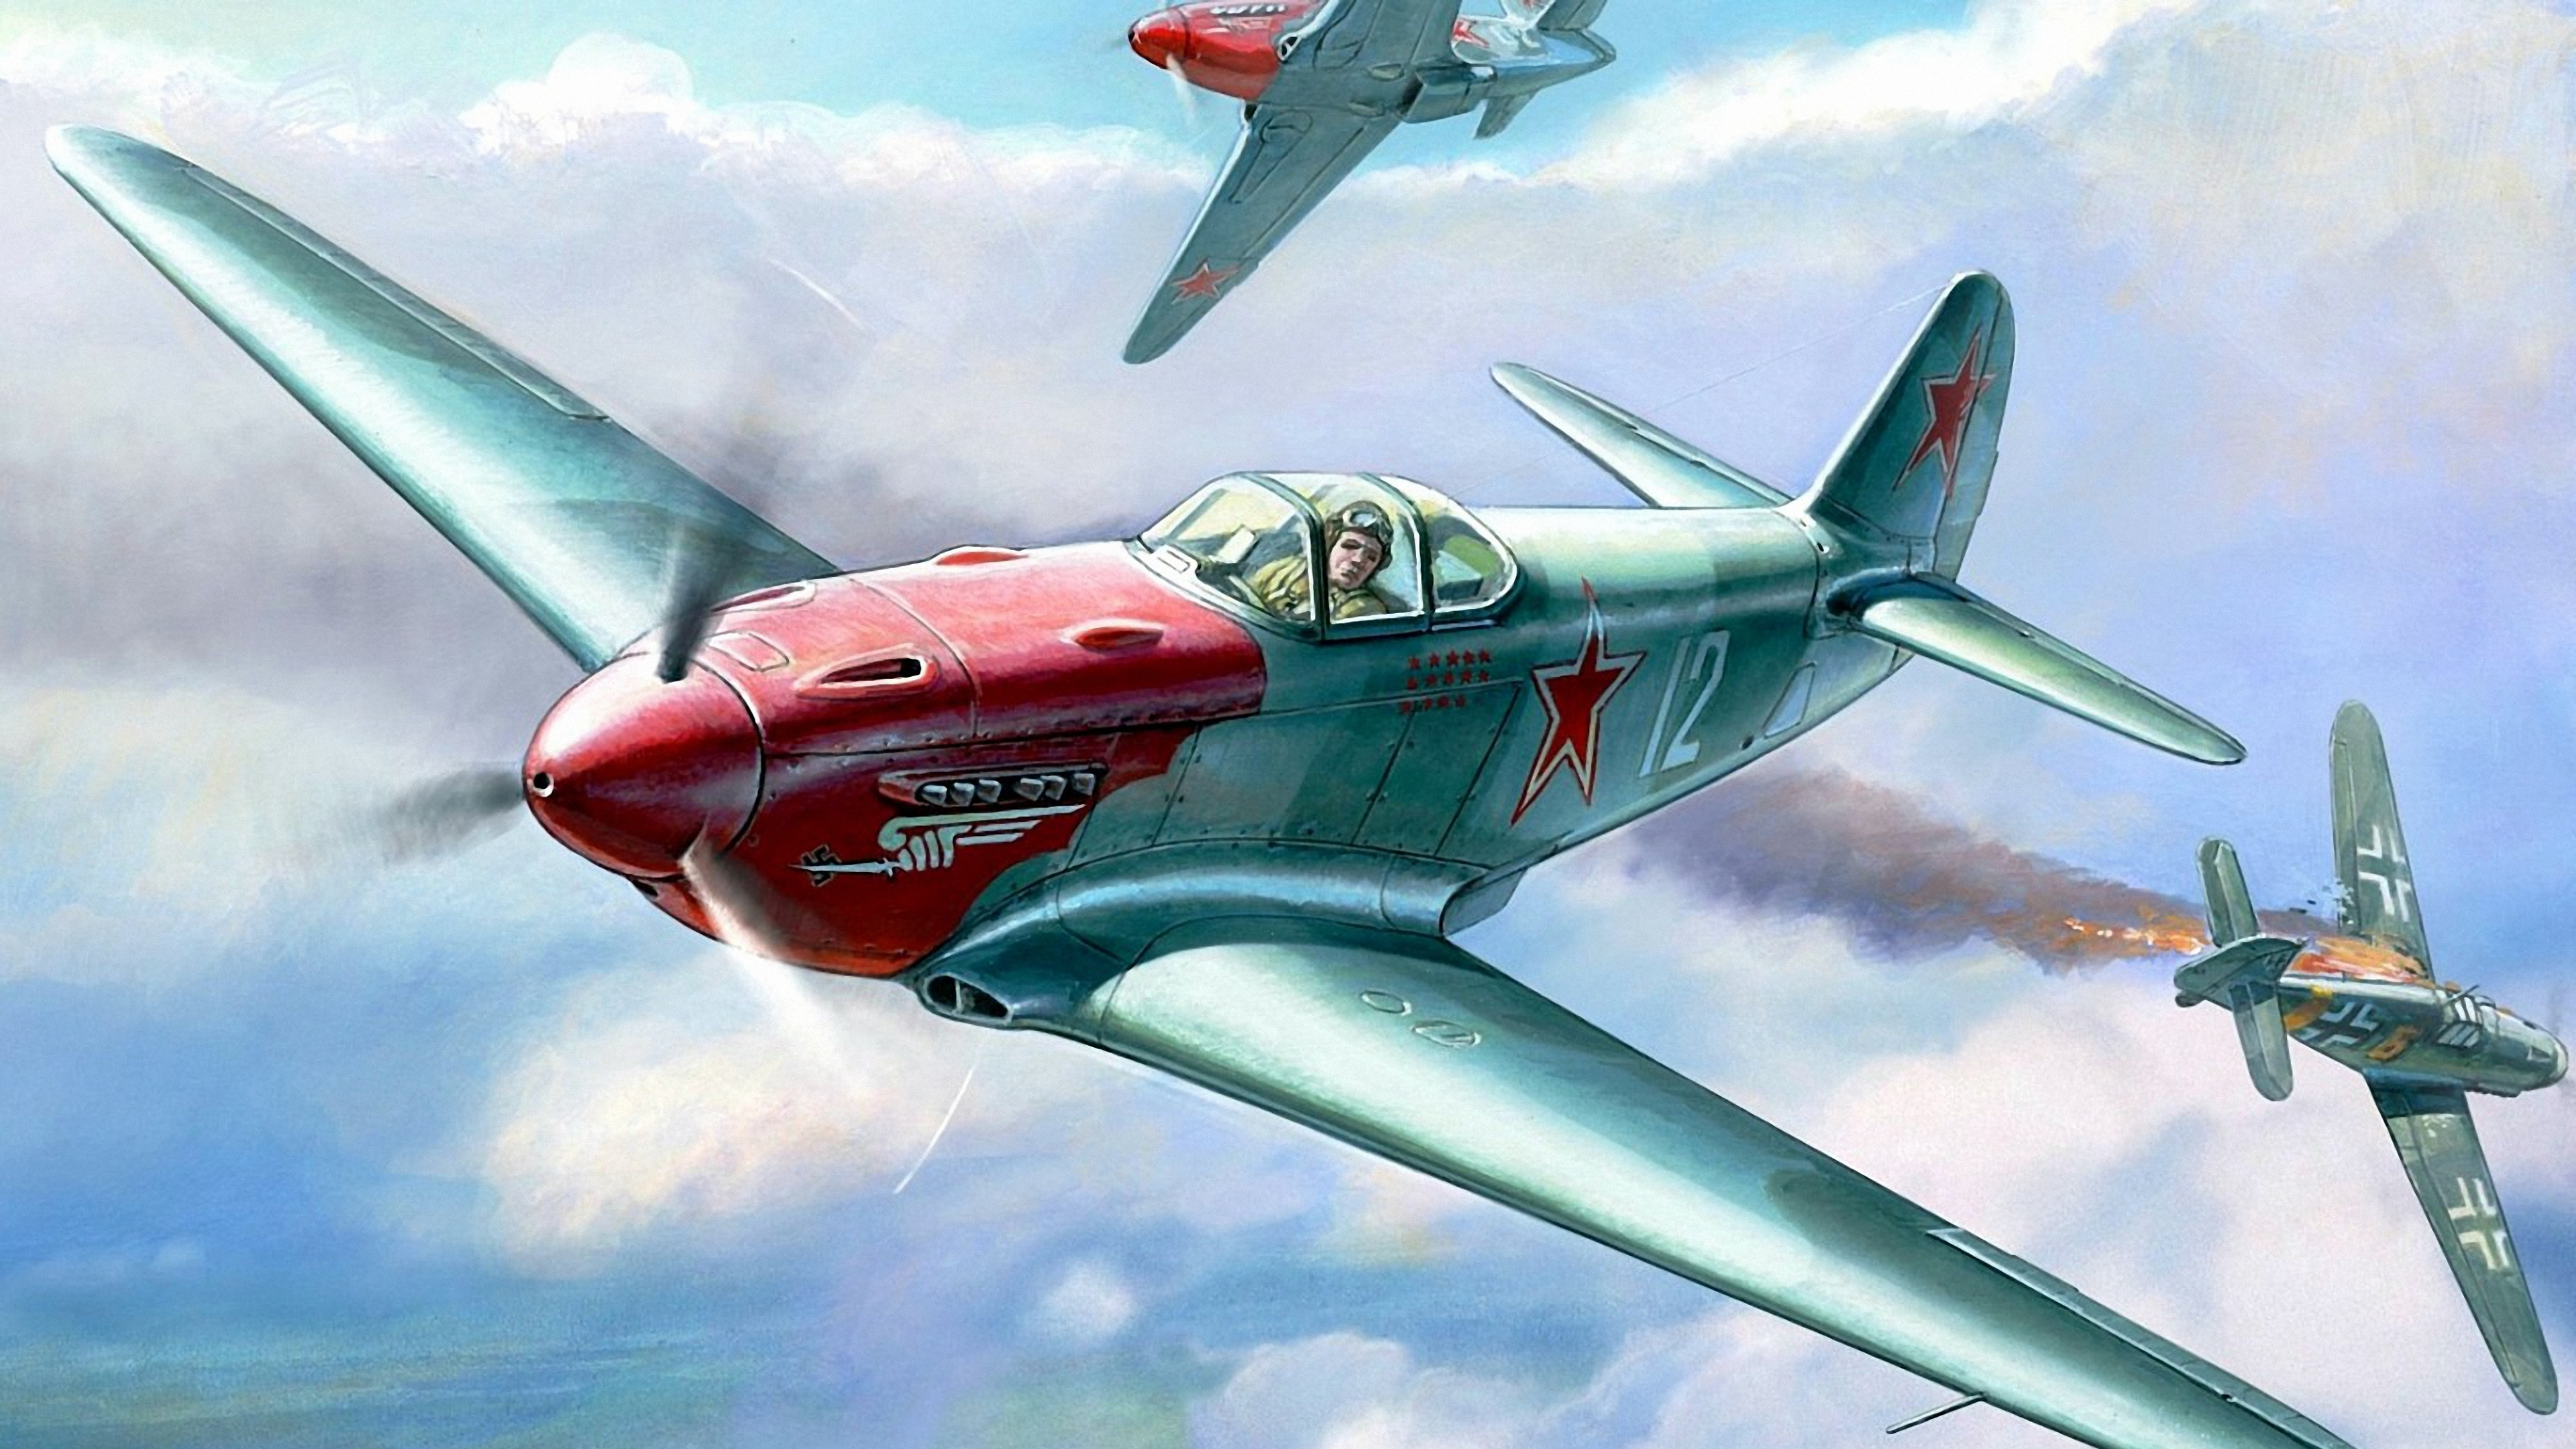 Rotes Und Graues Düsenflugzeug in Der Luft. Wallpaper in 3840x2160 Resolution